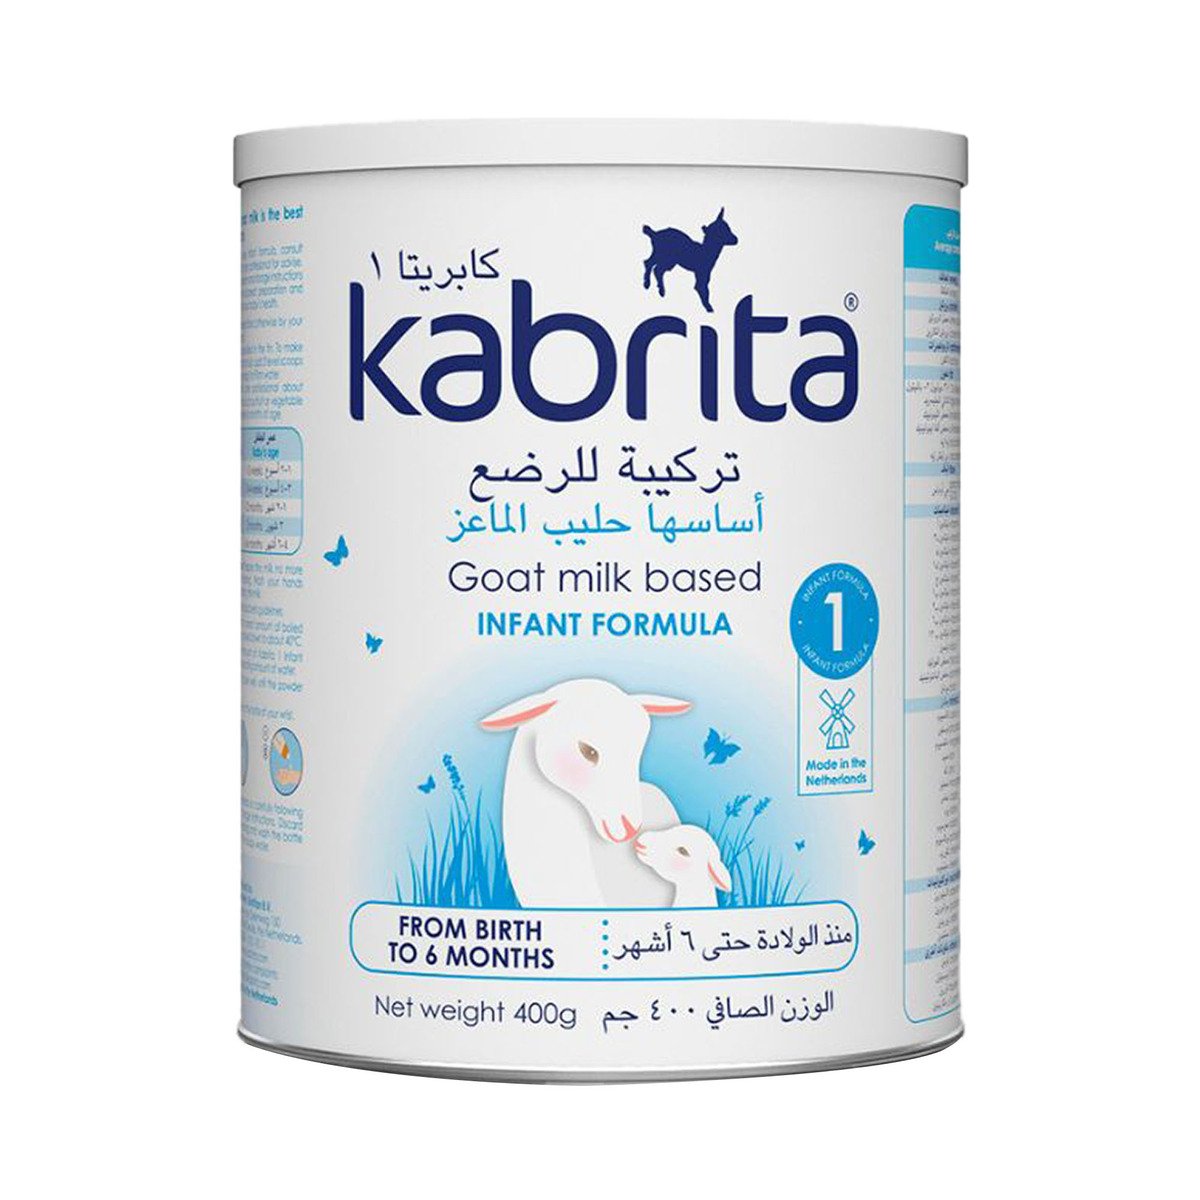 Kabrita Infant Formula 1 Based on Goat Milk 0 - 6 Months 400 g